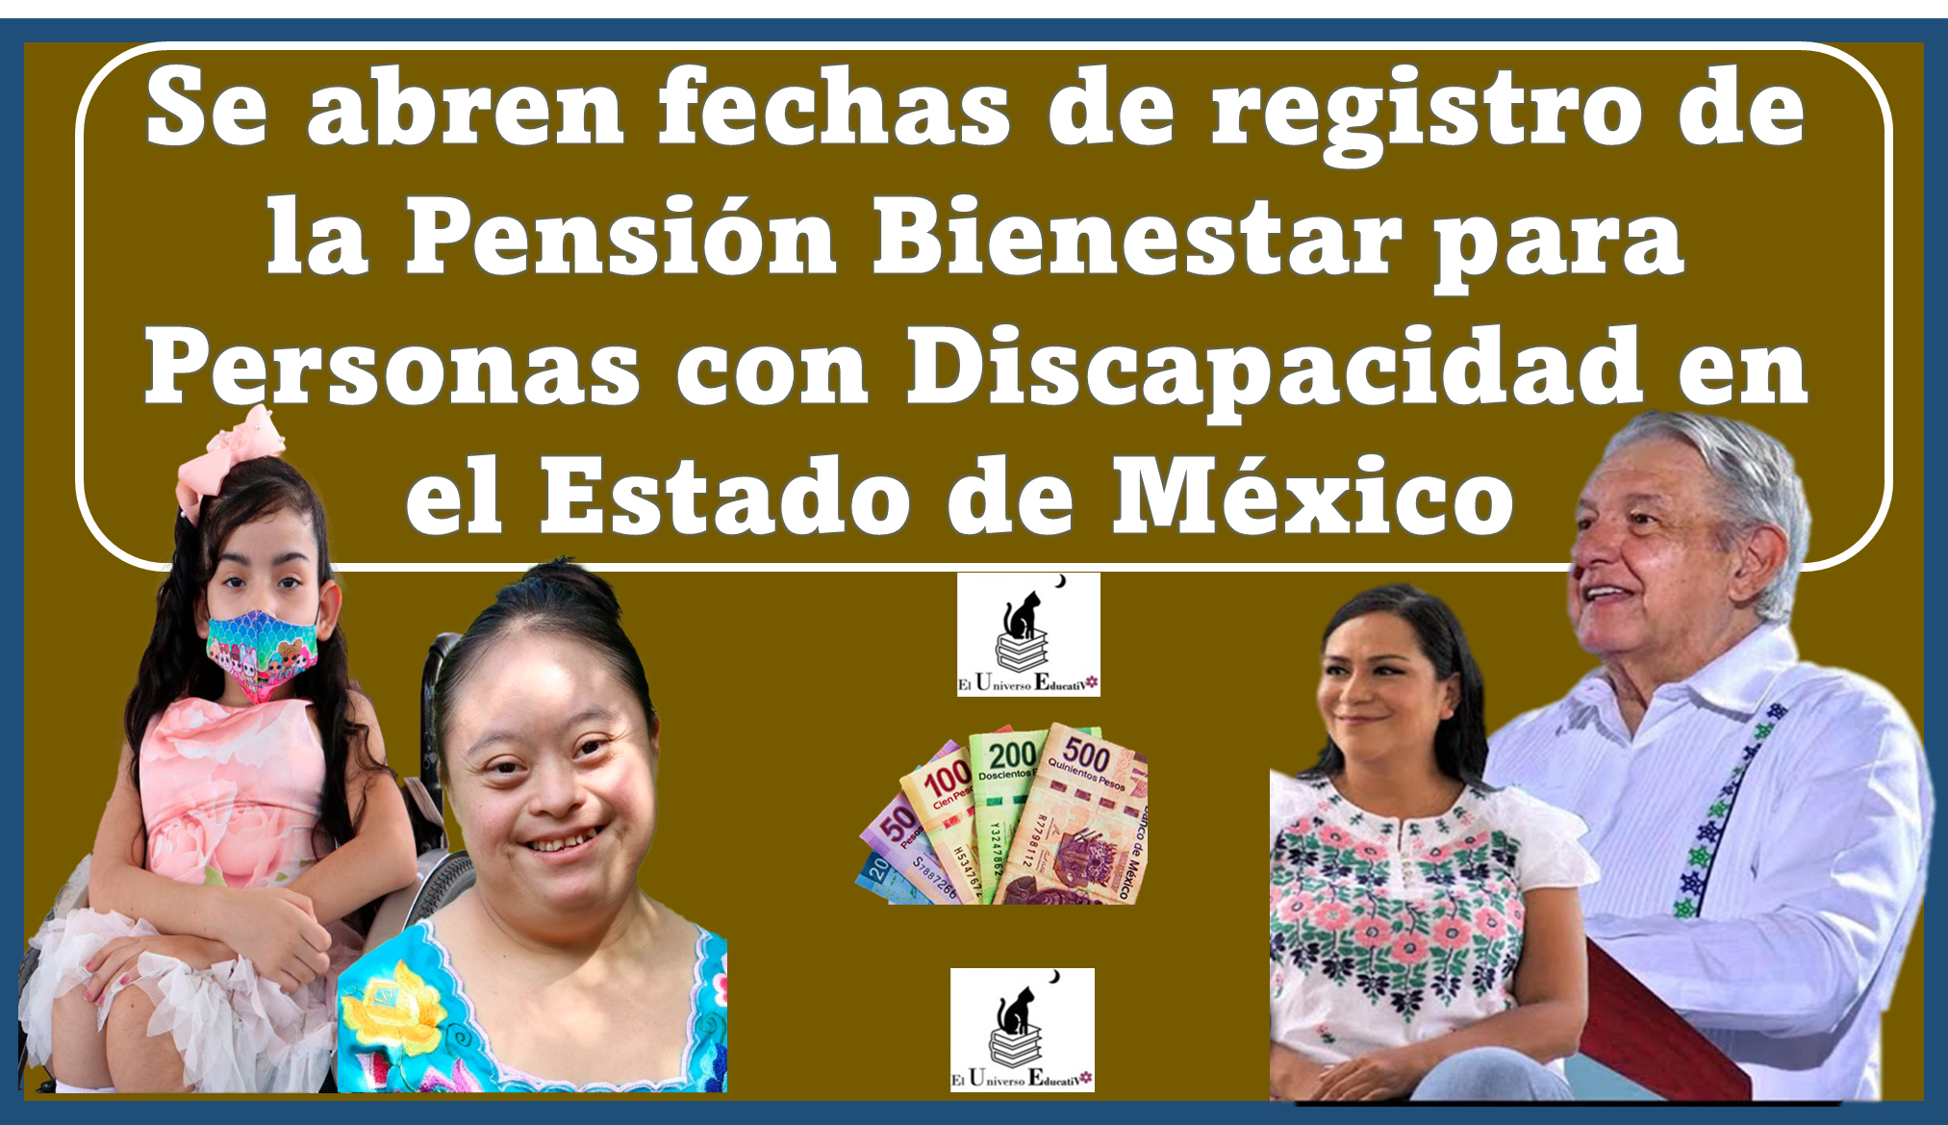 Se abren fechas de registro de la Pensión Bienestar para Personas con Discapacidad en el Estado de México 